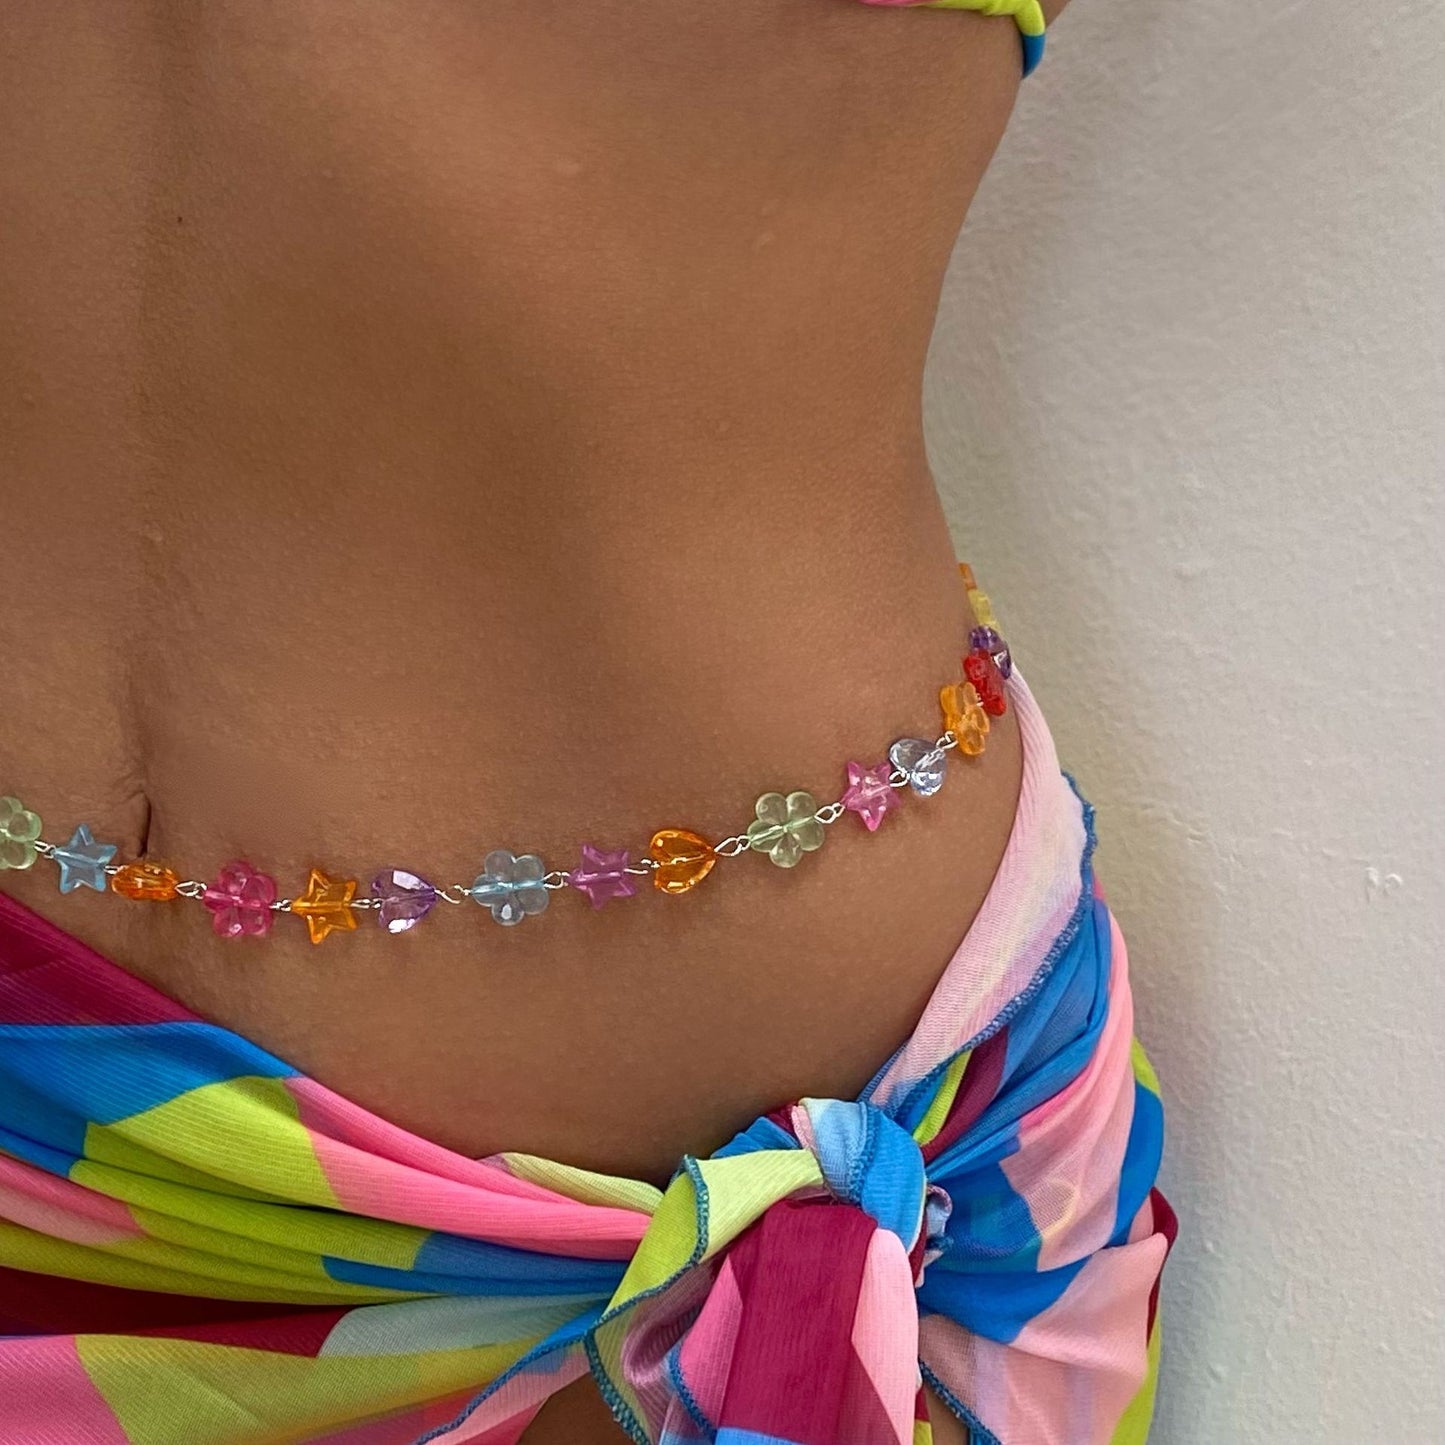 Acrylic Colorful Heart Flower Waist Chain